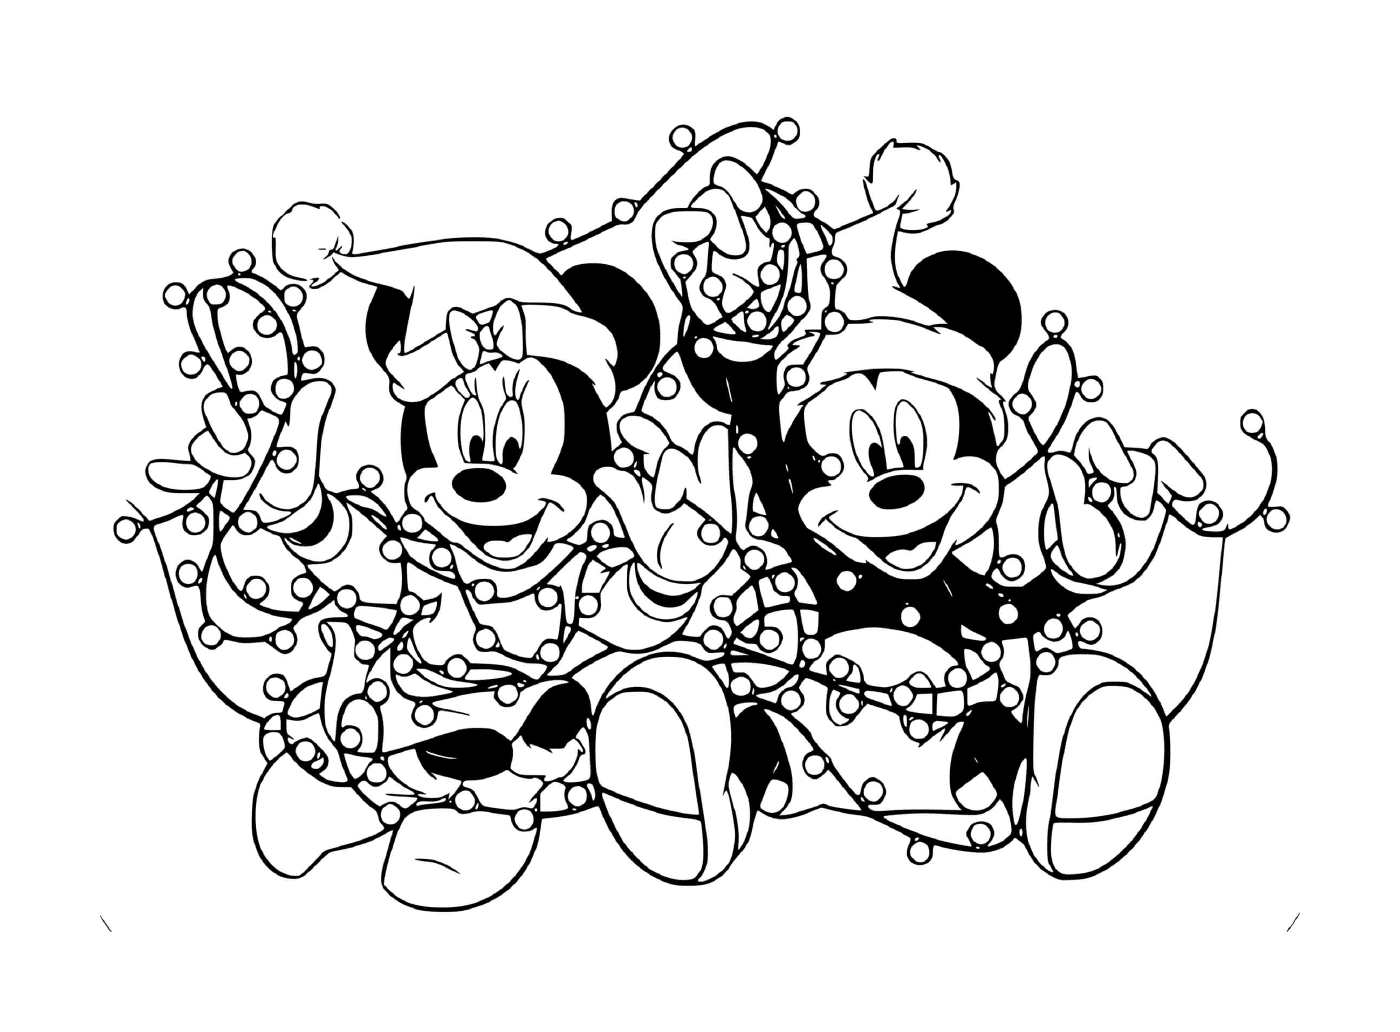  Mickey y Minnie enredados en las luces 